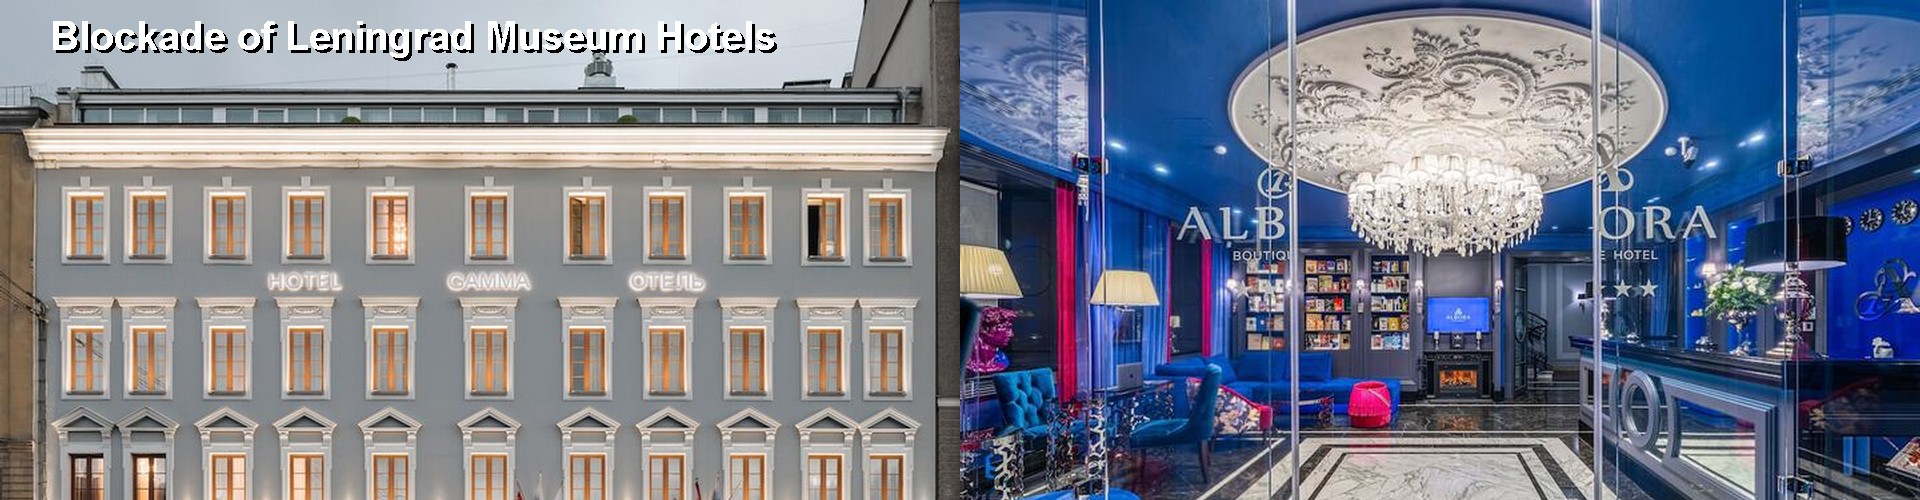 5 Best Hotels near Blockade of Leningrad Museum